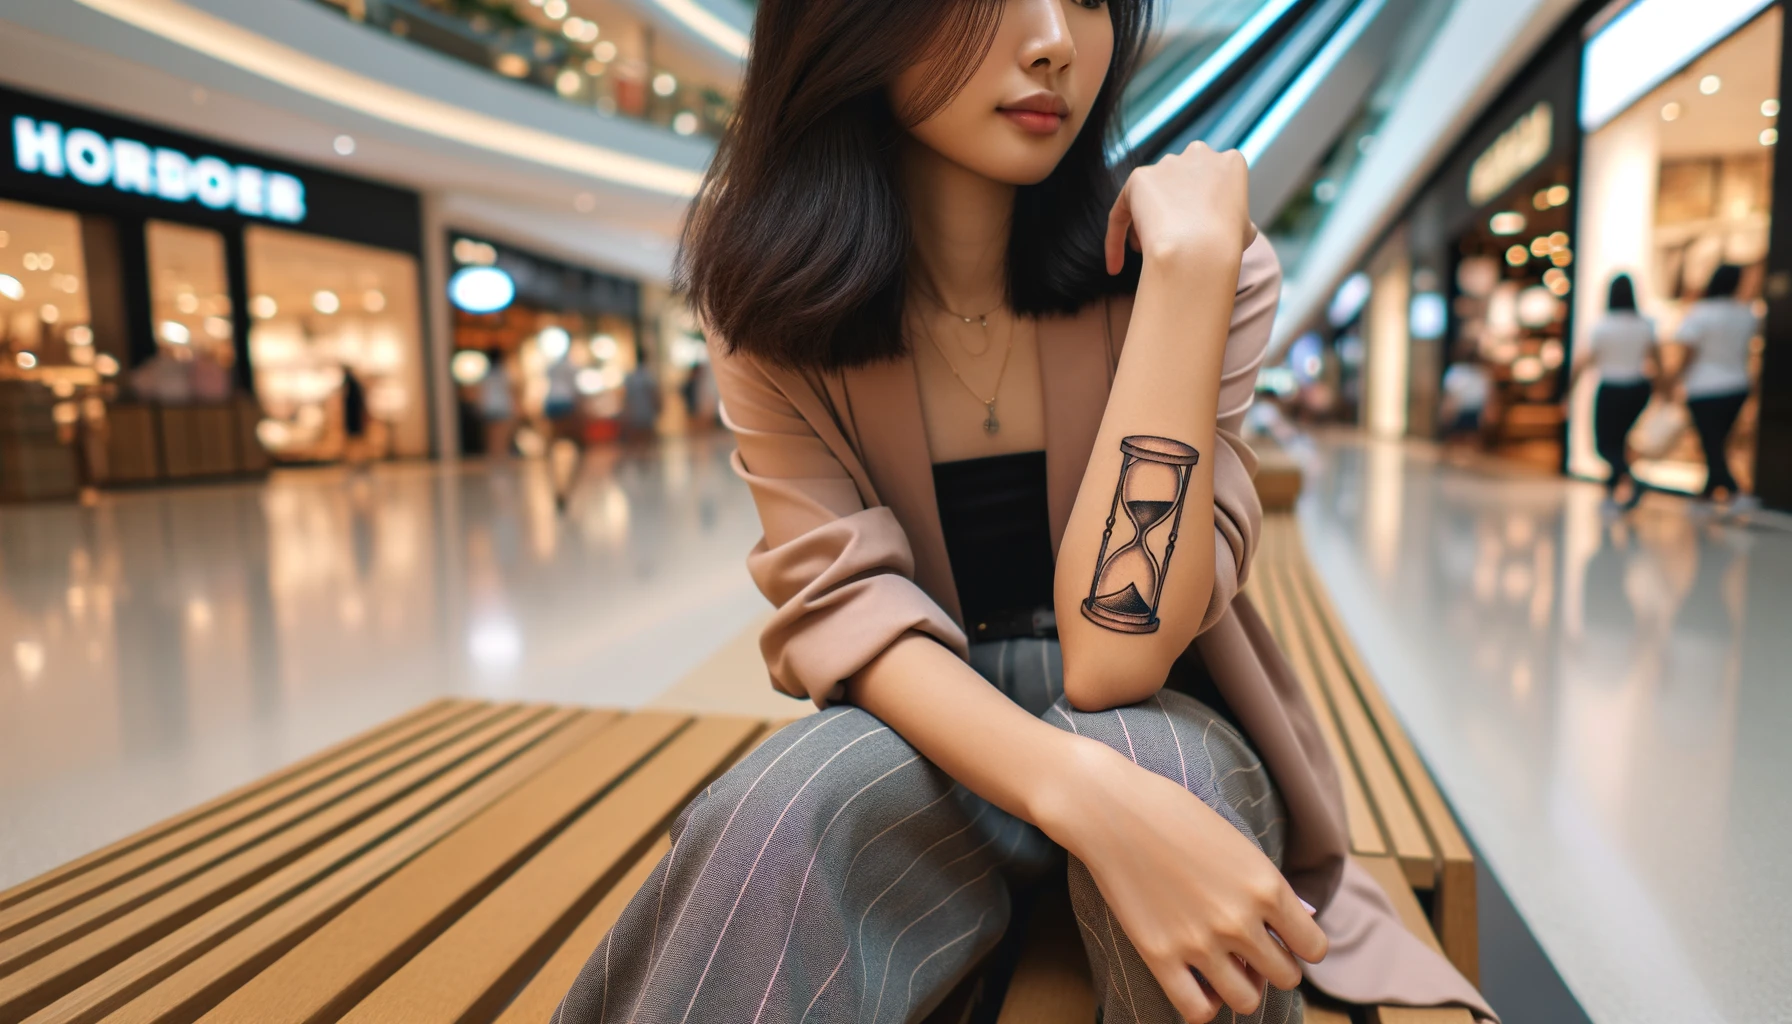 Kobieta z tatuaże klepsydrą na przegubie ręki, siedząca w galerii handlowej